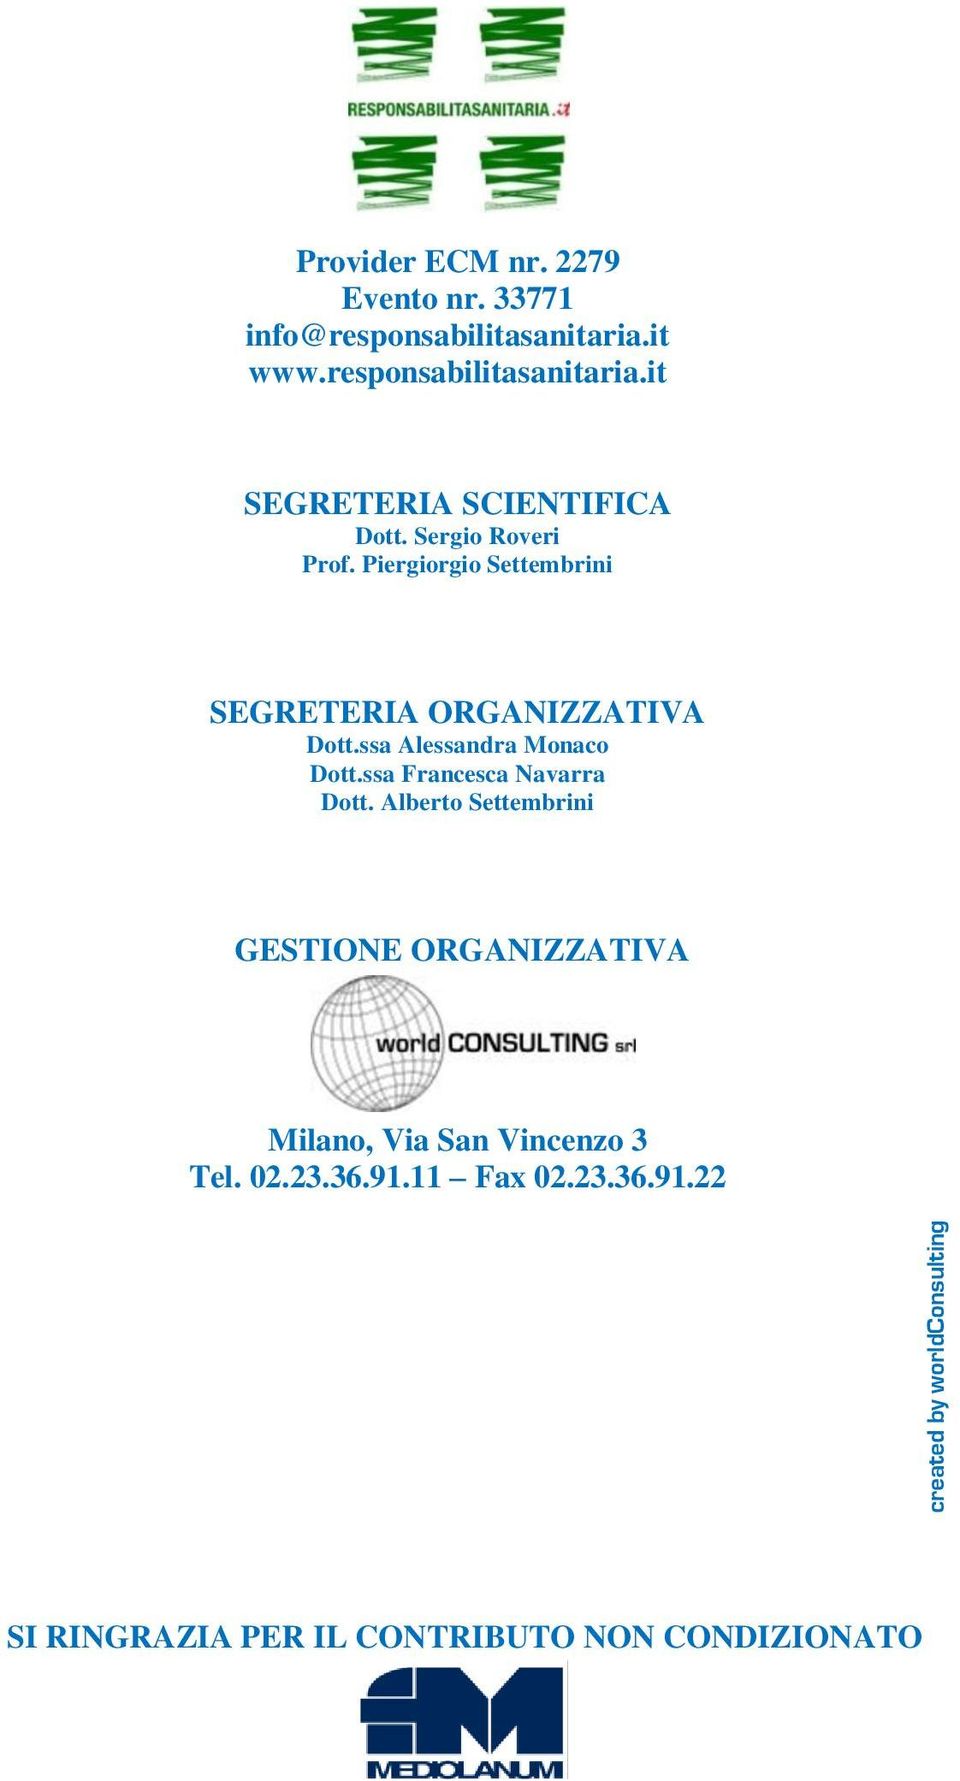 Piergiorgio Settembrini SEGRETERIA ORGANIZZATIVA Dott.ssa Alessandra Monaco Dott.ssa Francesca Navarra Dott.